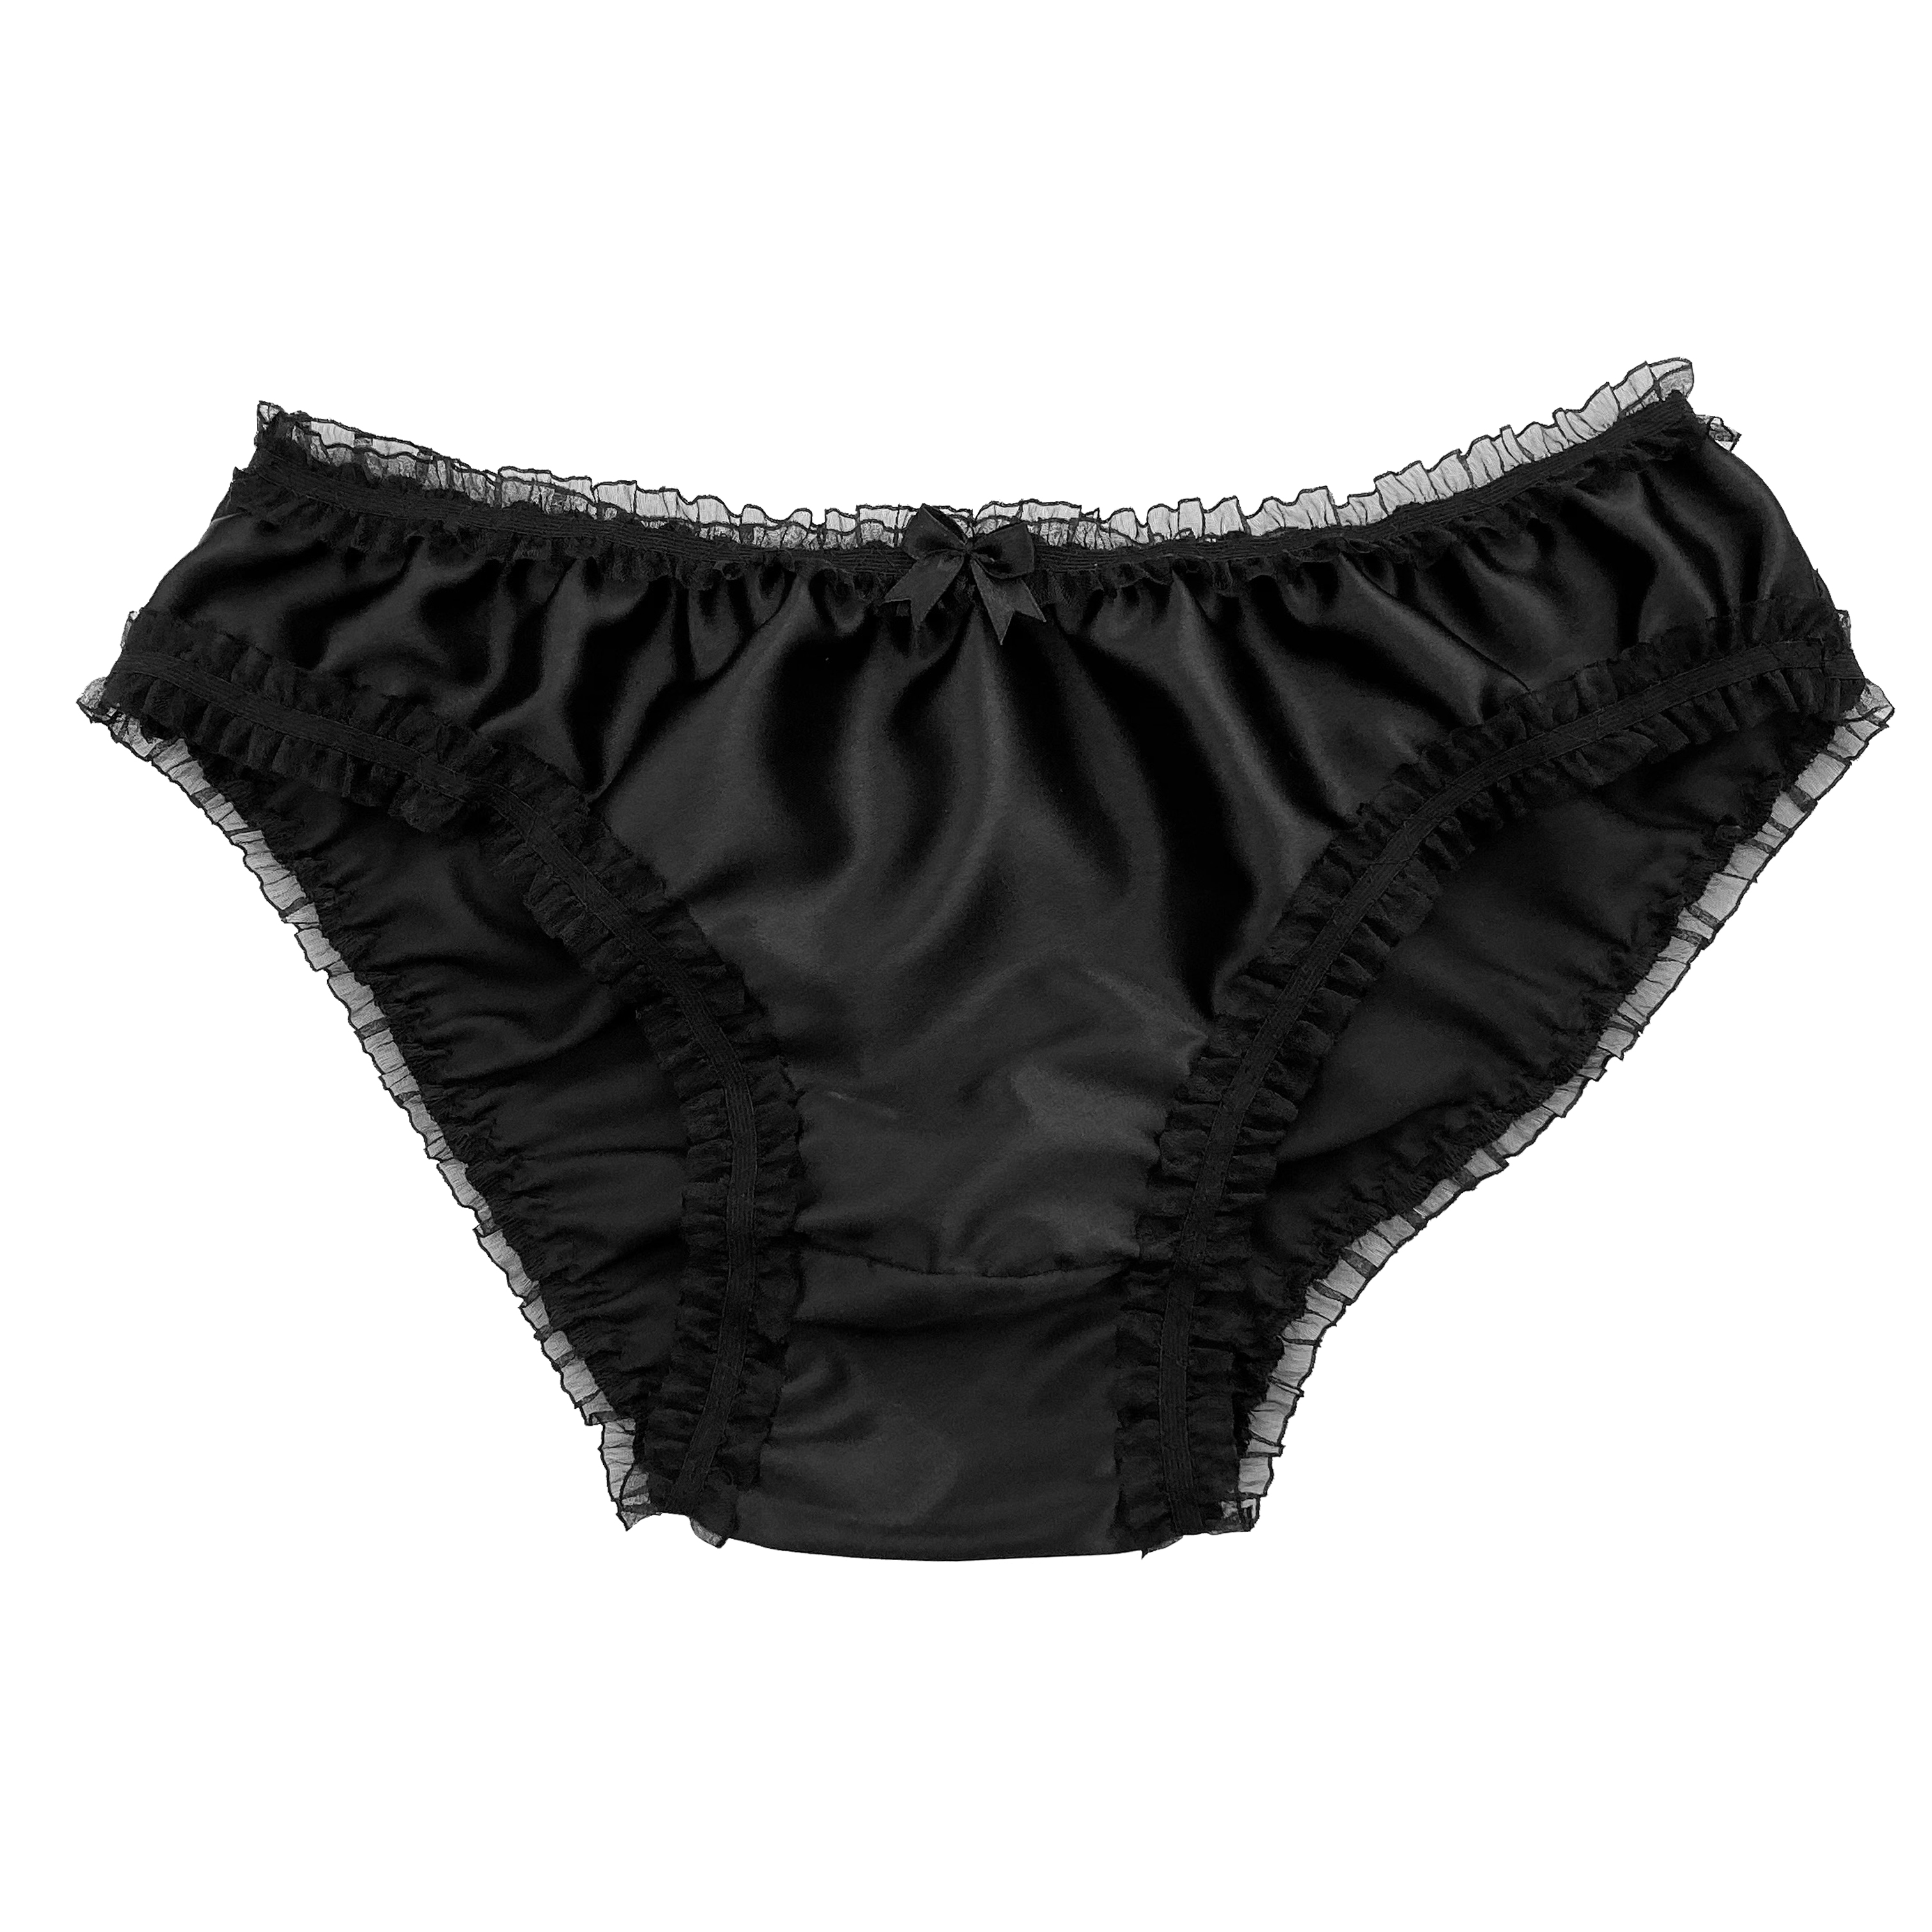 Black silky panties